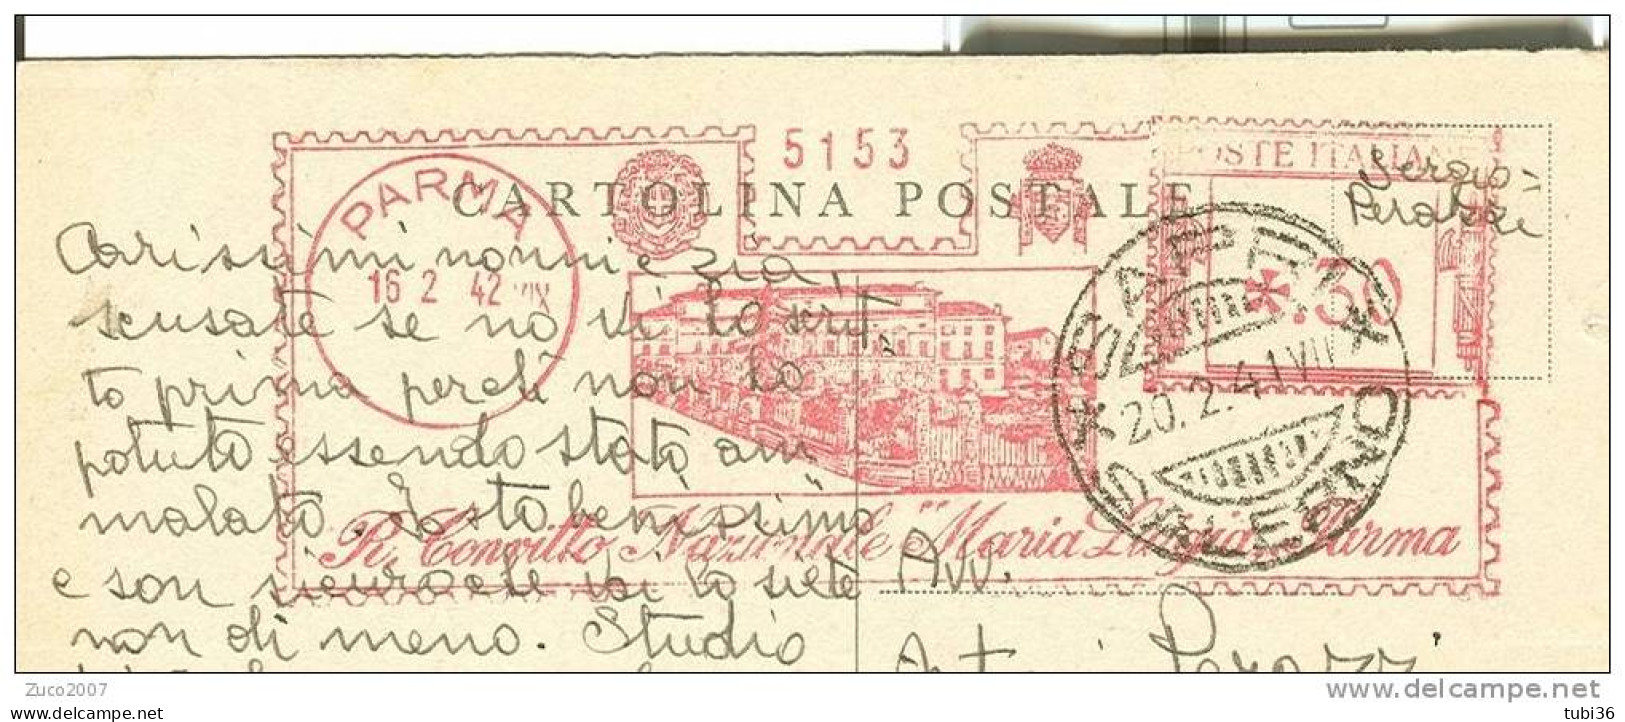 R. CONVITTO NAZIONALE MARIA LUIGIA PARMA - VIAGGIATO 1942 - TIMBRO ROSSO  16/2/1942 DA PARMA A SAPRI (SALERNO). - Publicity